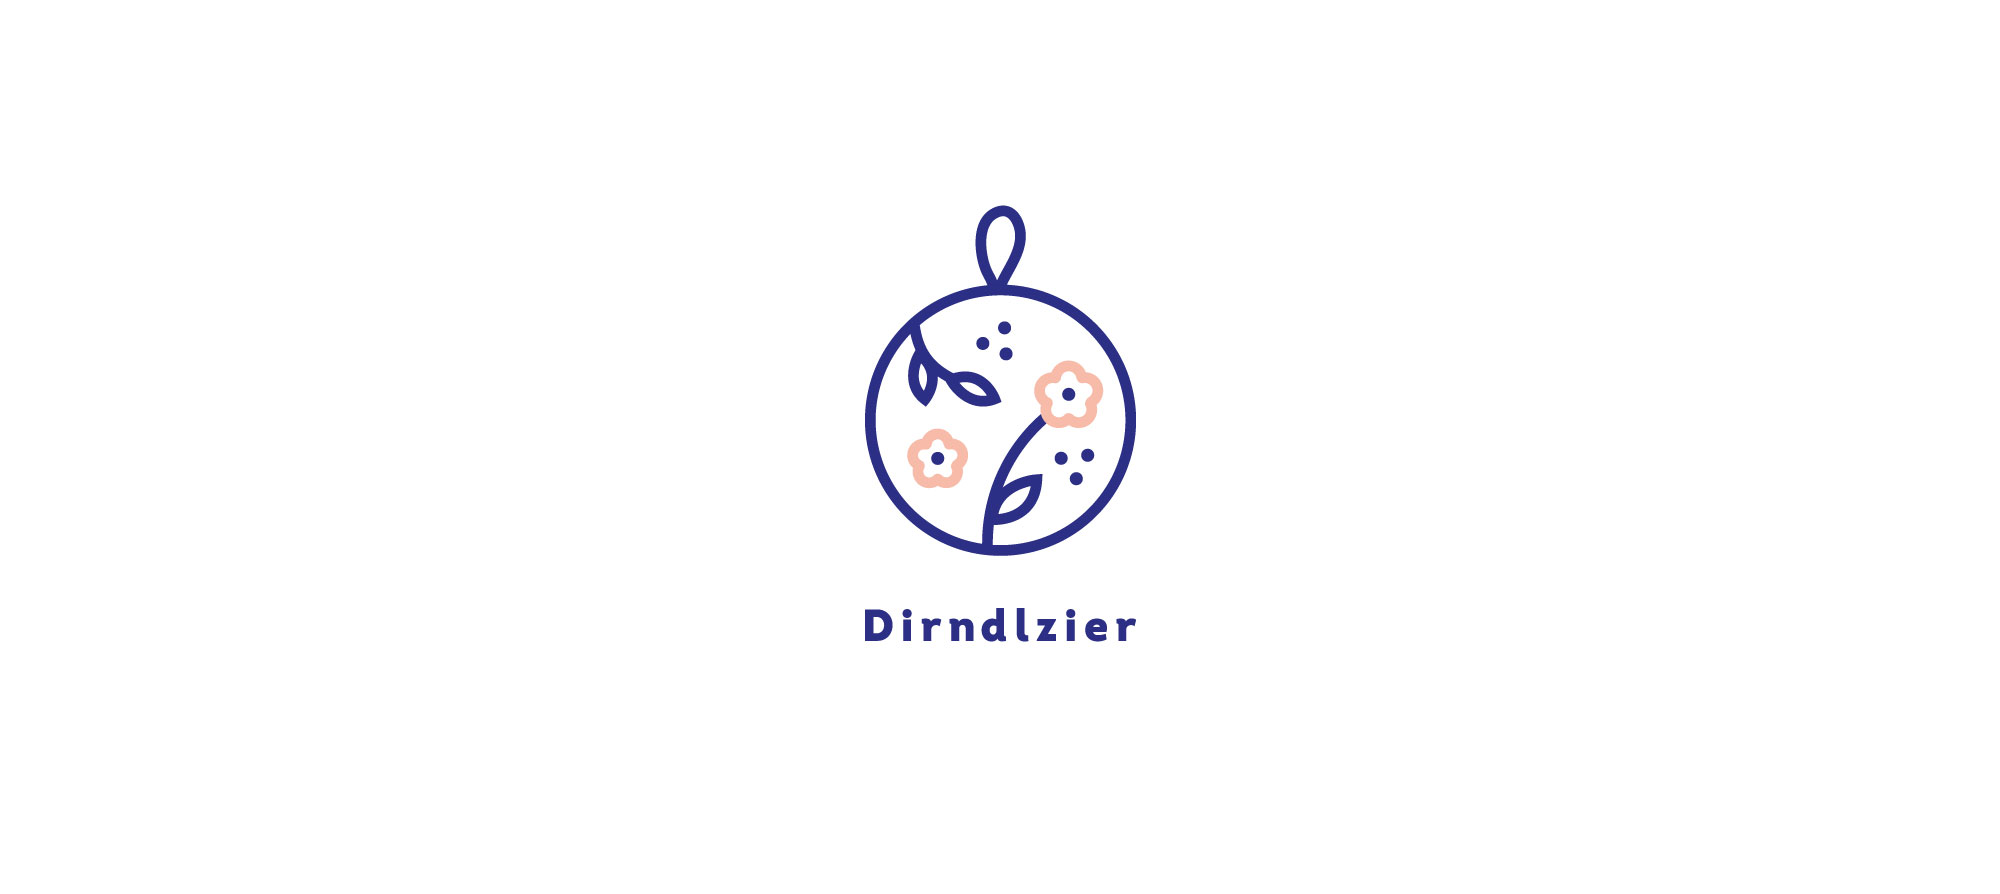 dirndlzier_logo_01